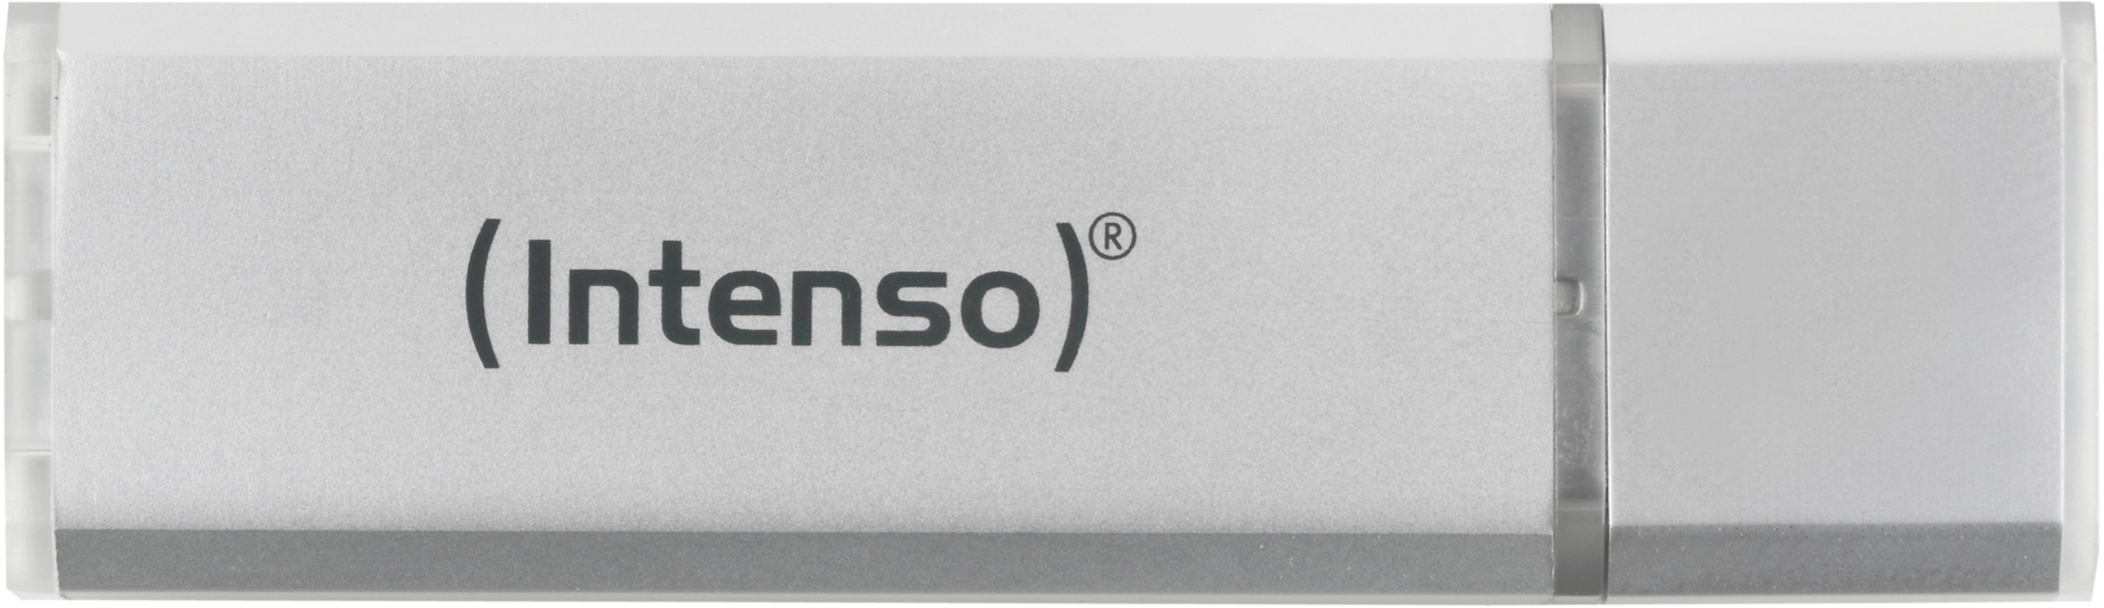 Line USB-Stick, Silber 35 Ultra INTENSO MB/s, GB, 16